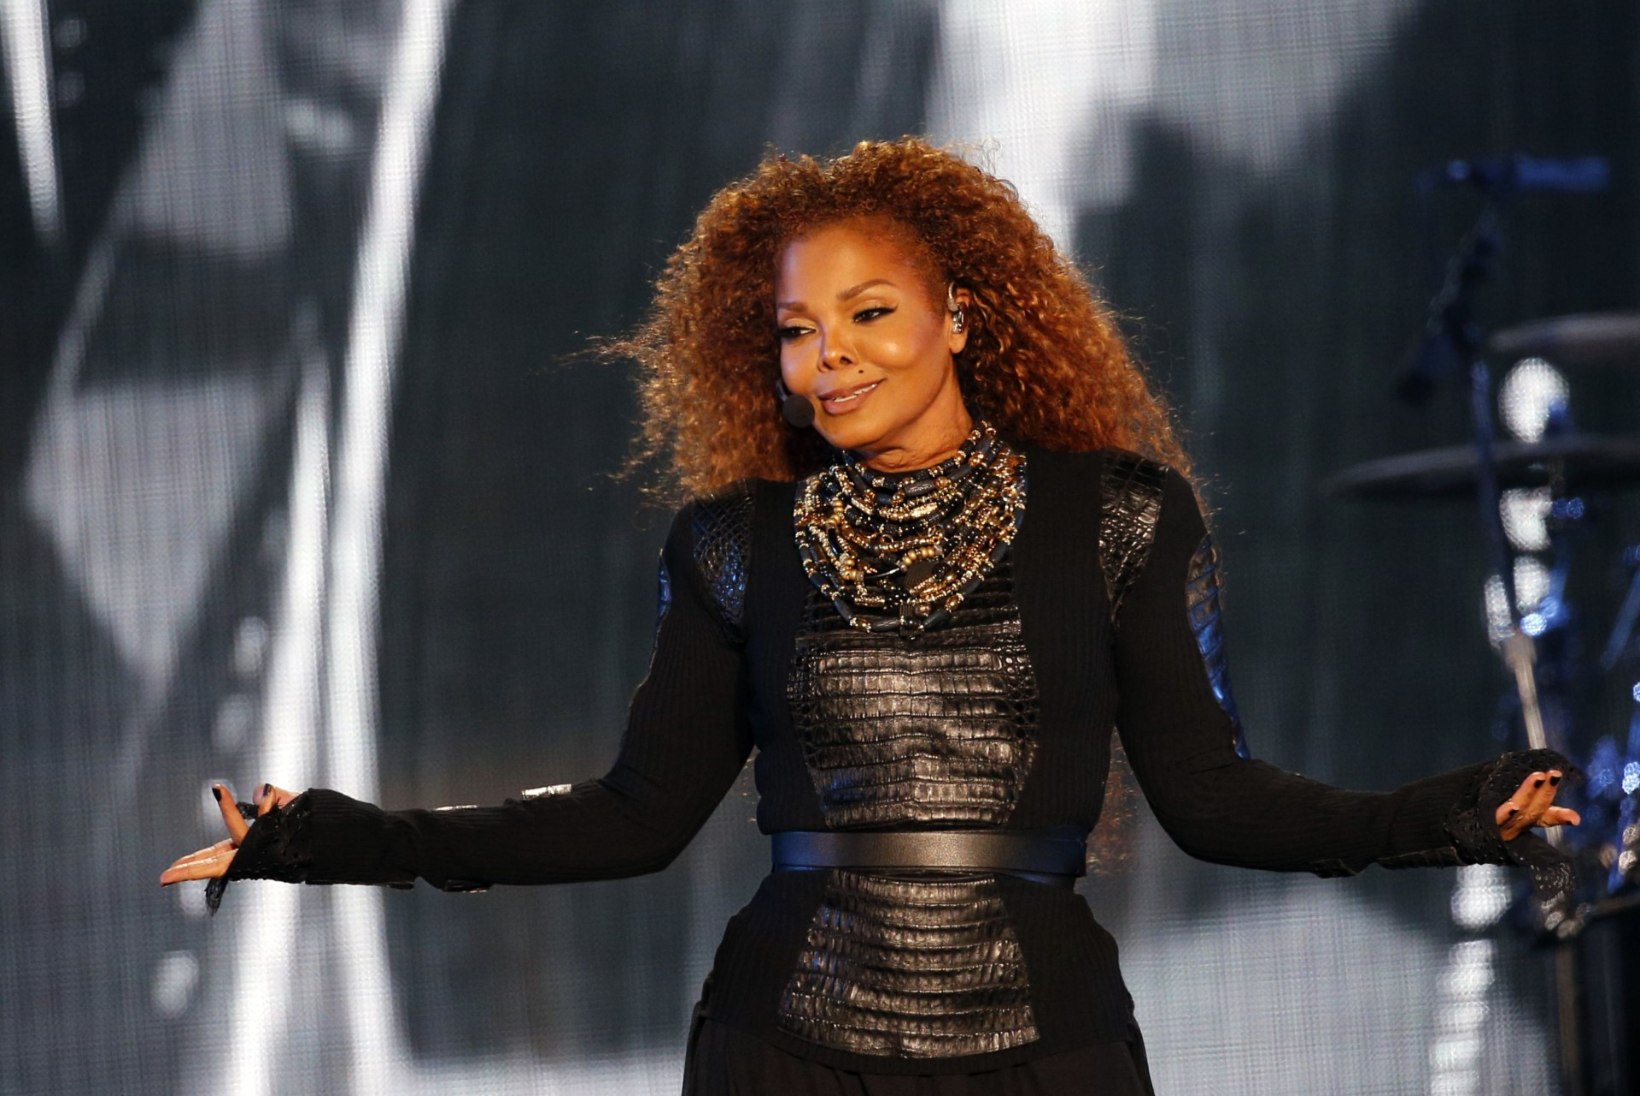 Kas 49aastane Janet Jackson tunnistas äsja rasedust?!